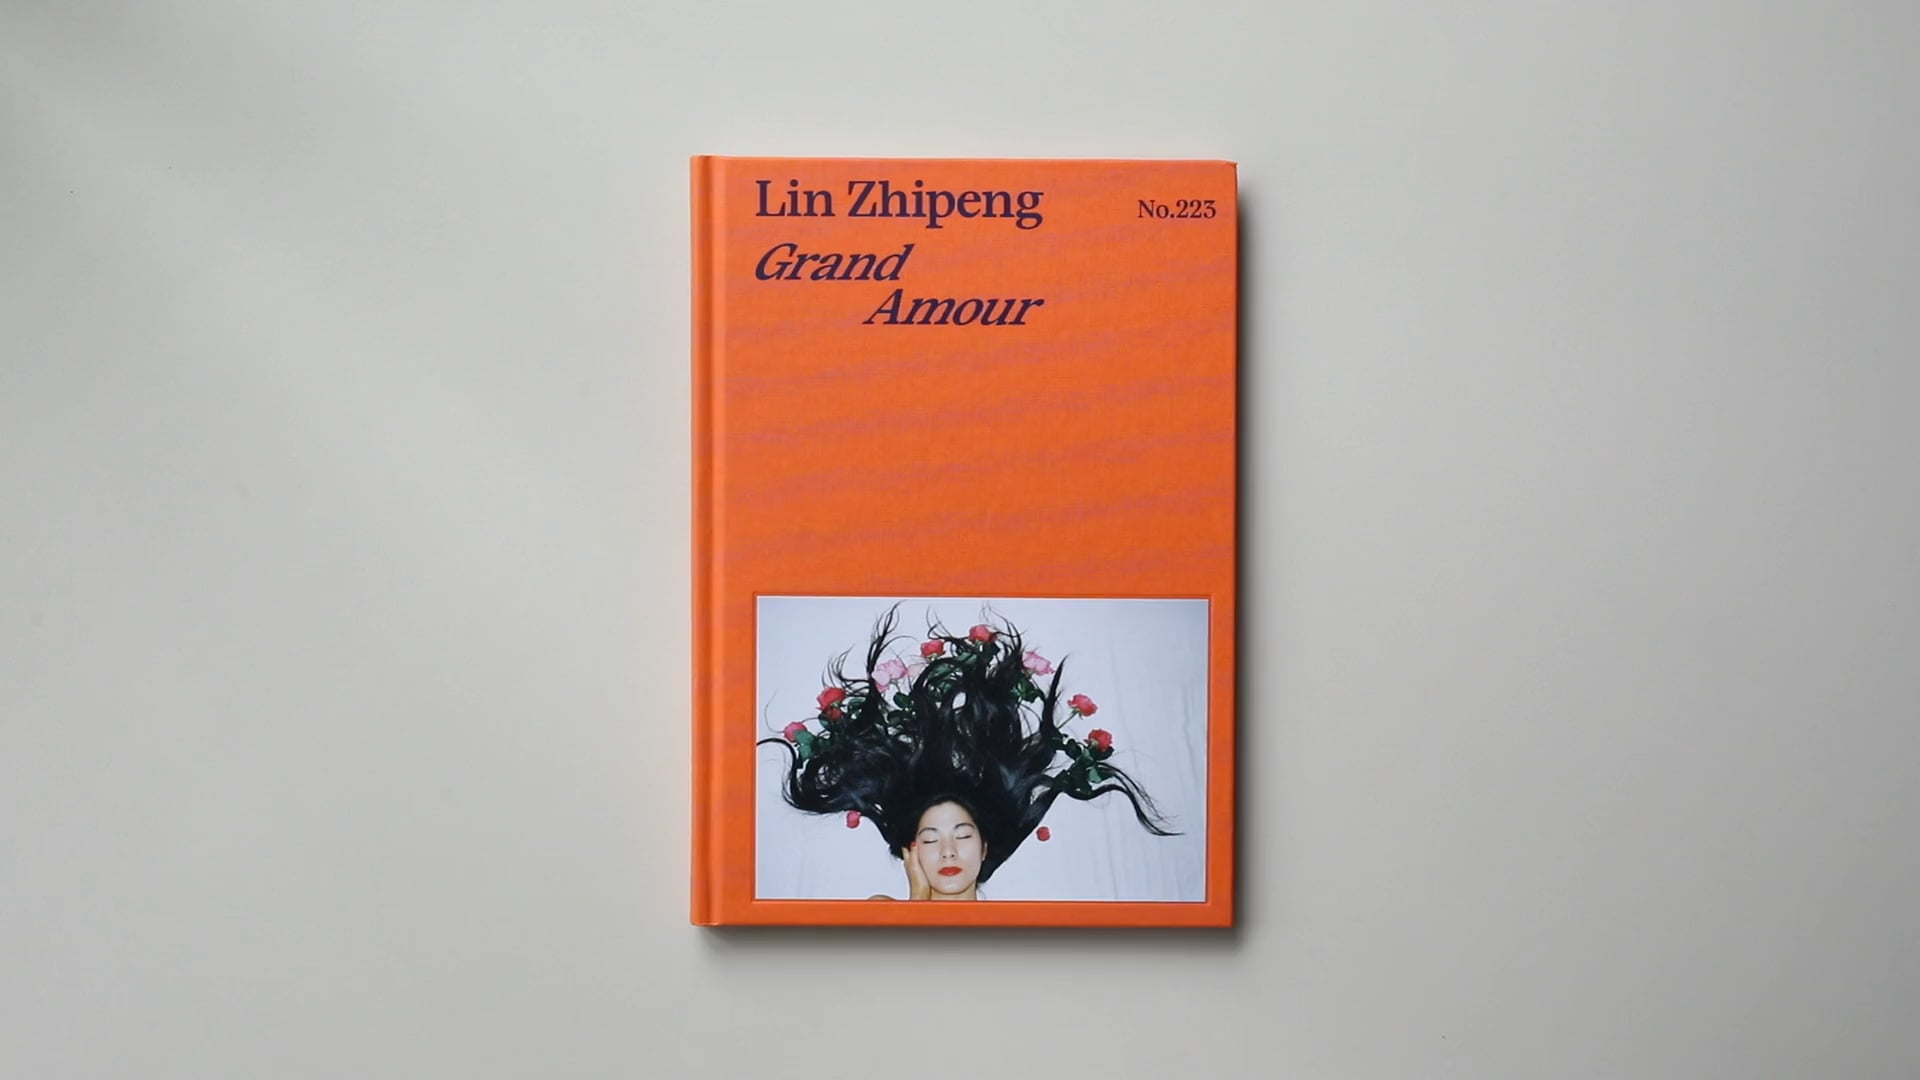 Grand Amour by Lin Zhipeng aka No.223